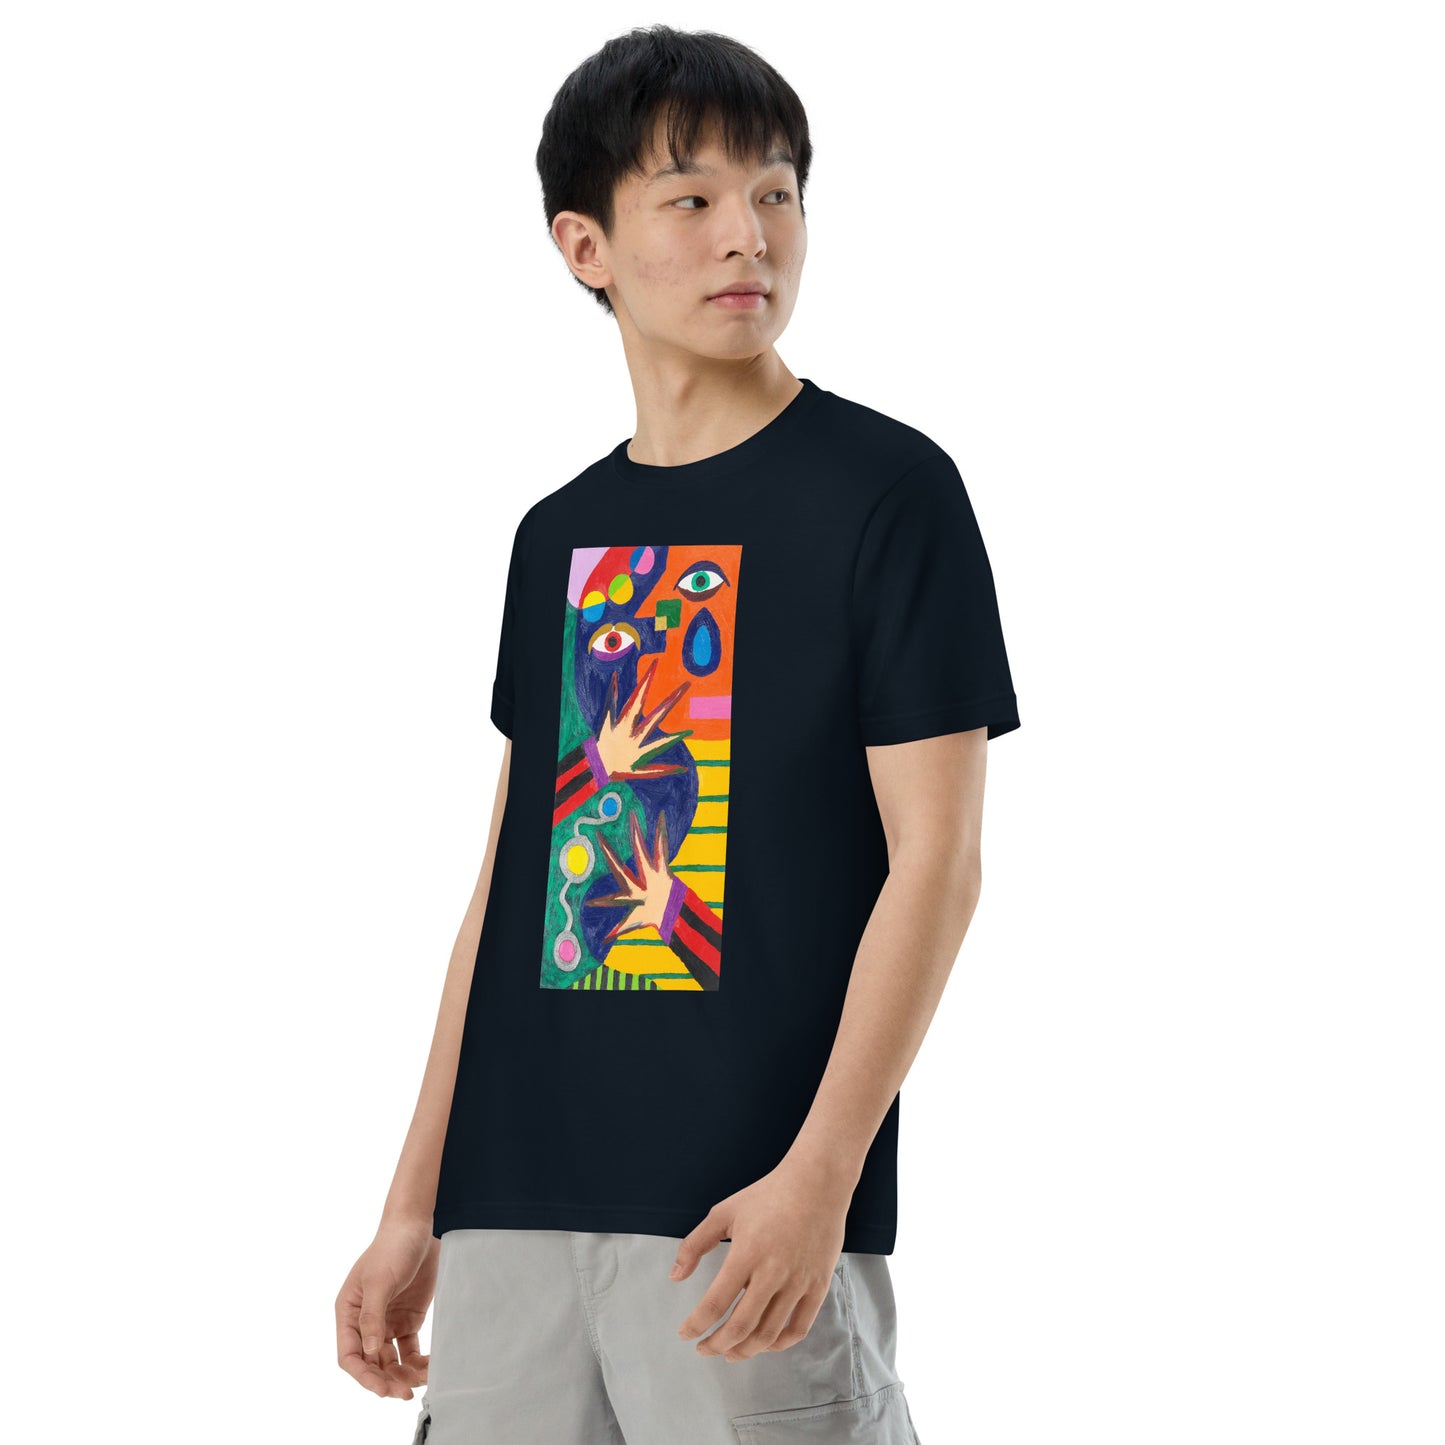 045-清水誠治-4-前面プリントTシャツ-アートをデザイン